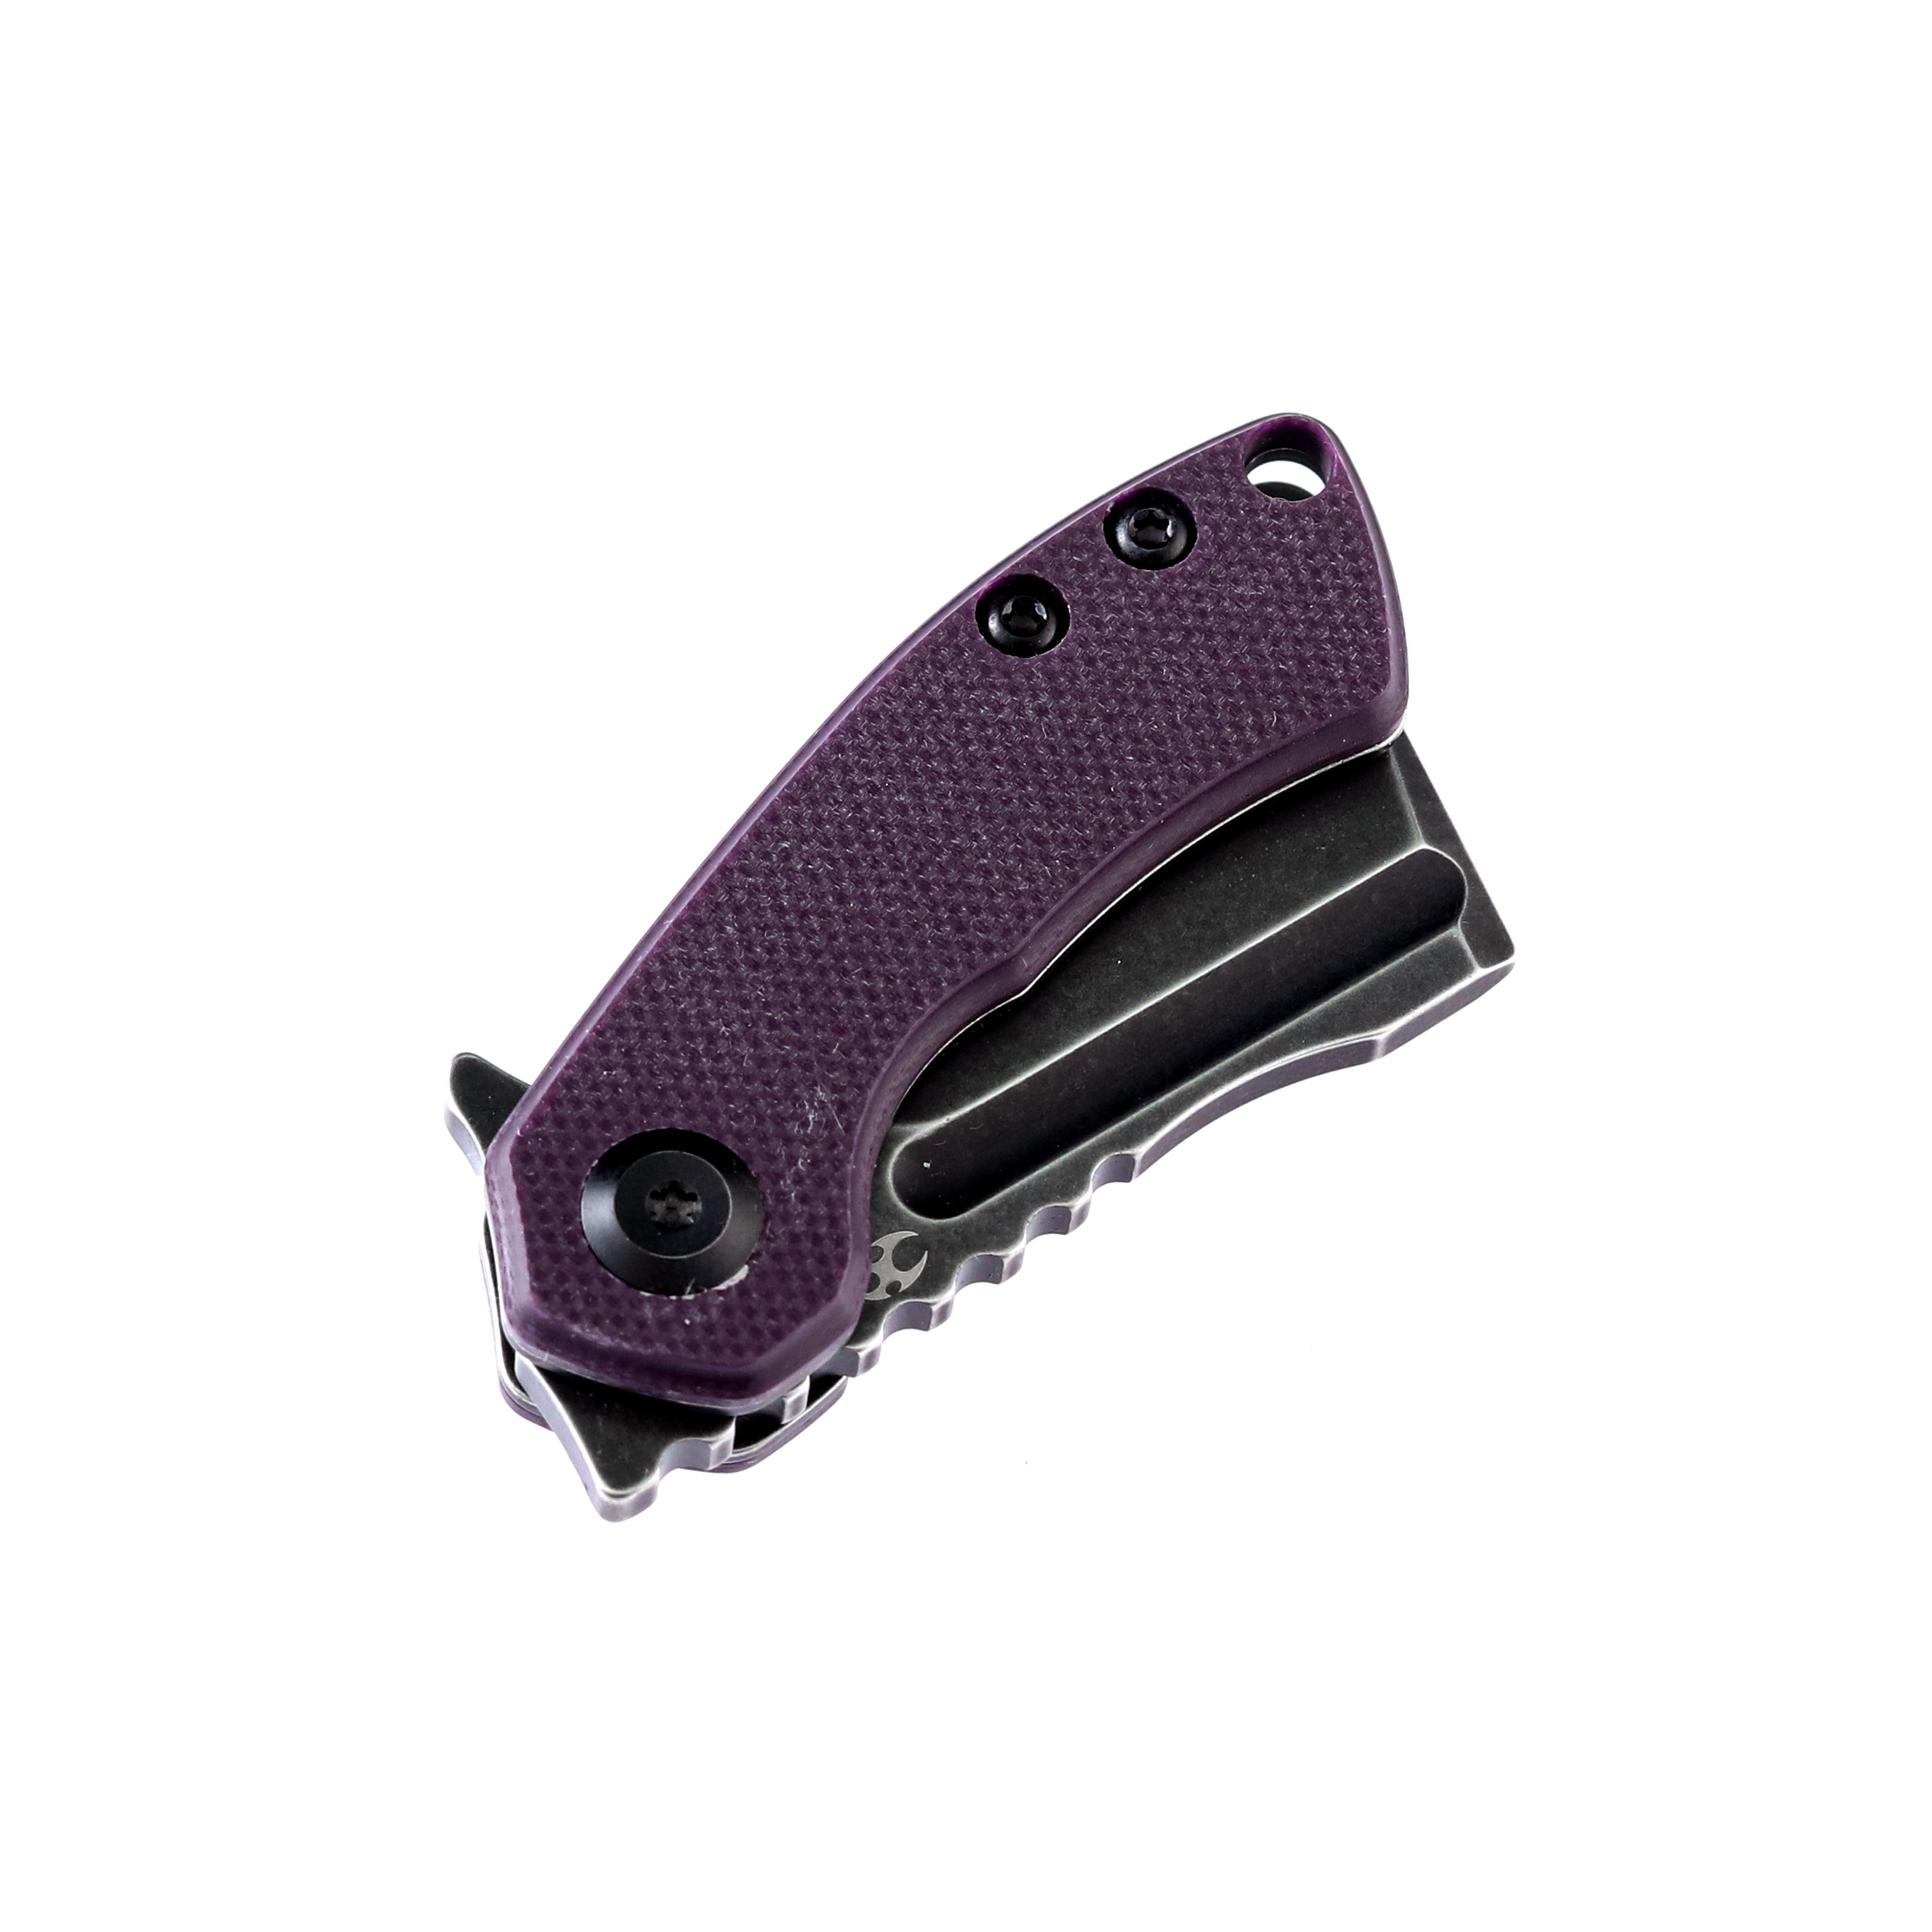 Kansept Knives T3030A3 Mini Korvid 154CM Blade Purple G10 Handle Liner Lock Edc Knives